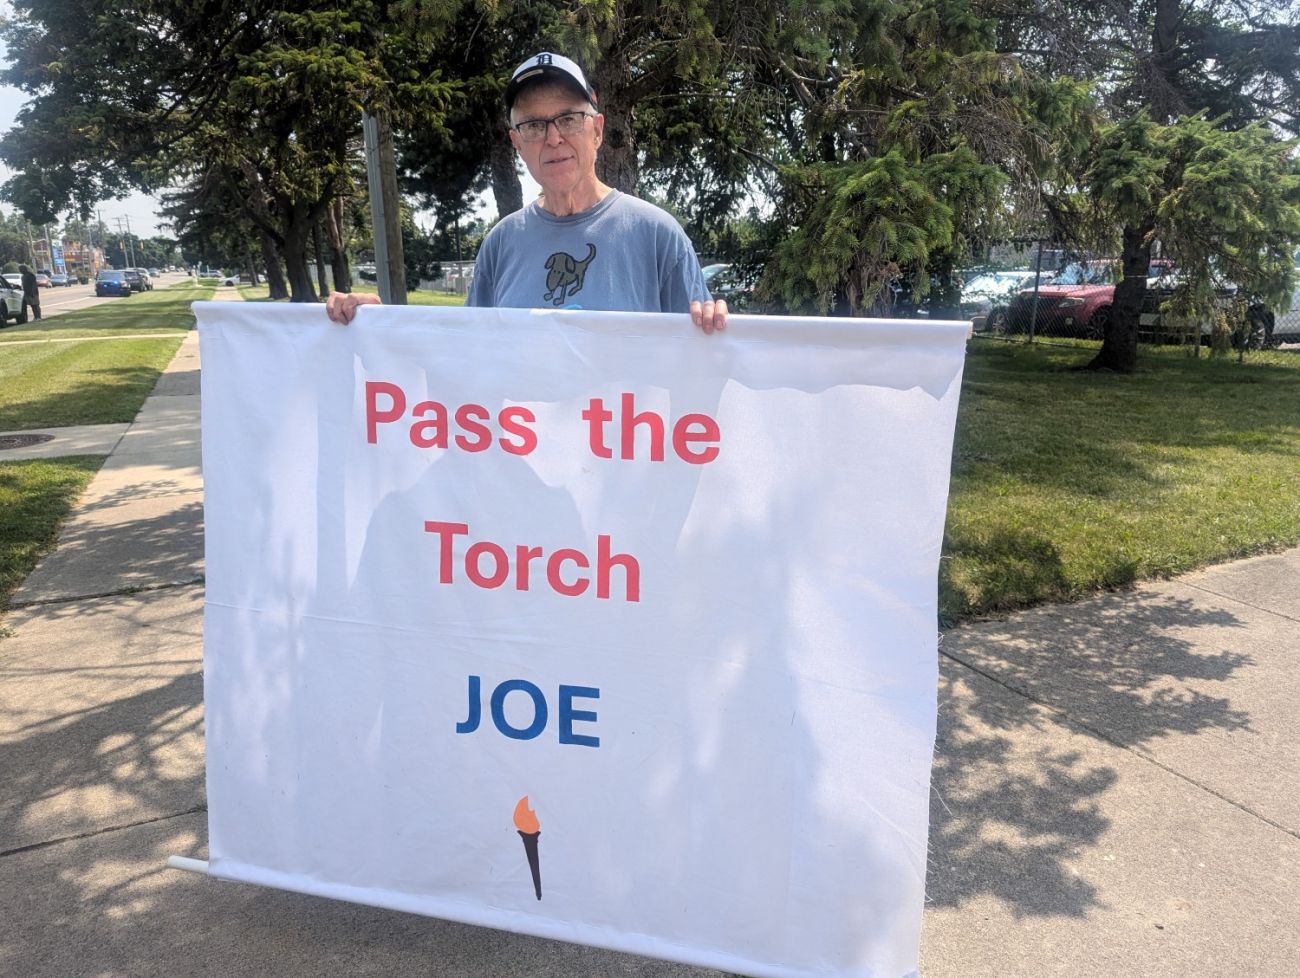 A man holds a "pass the torch Joe" sign